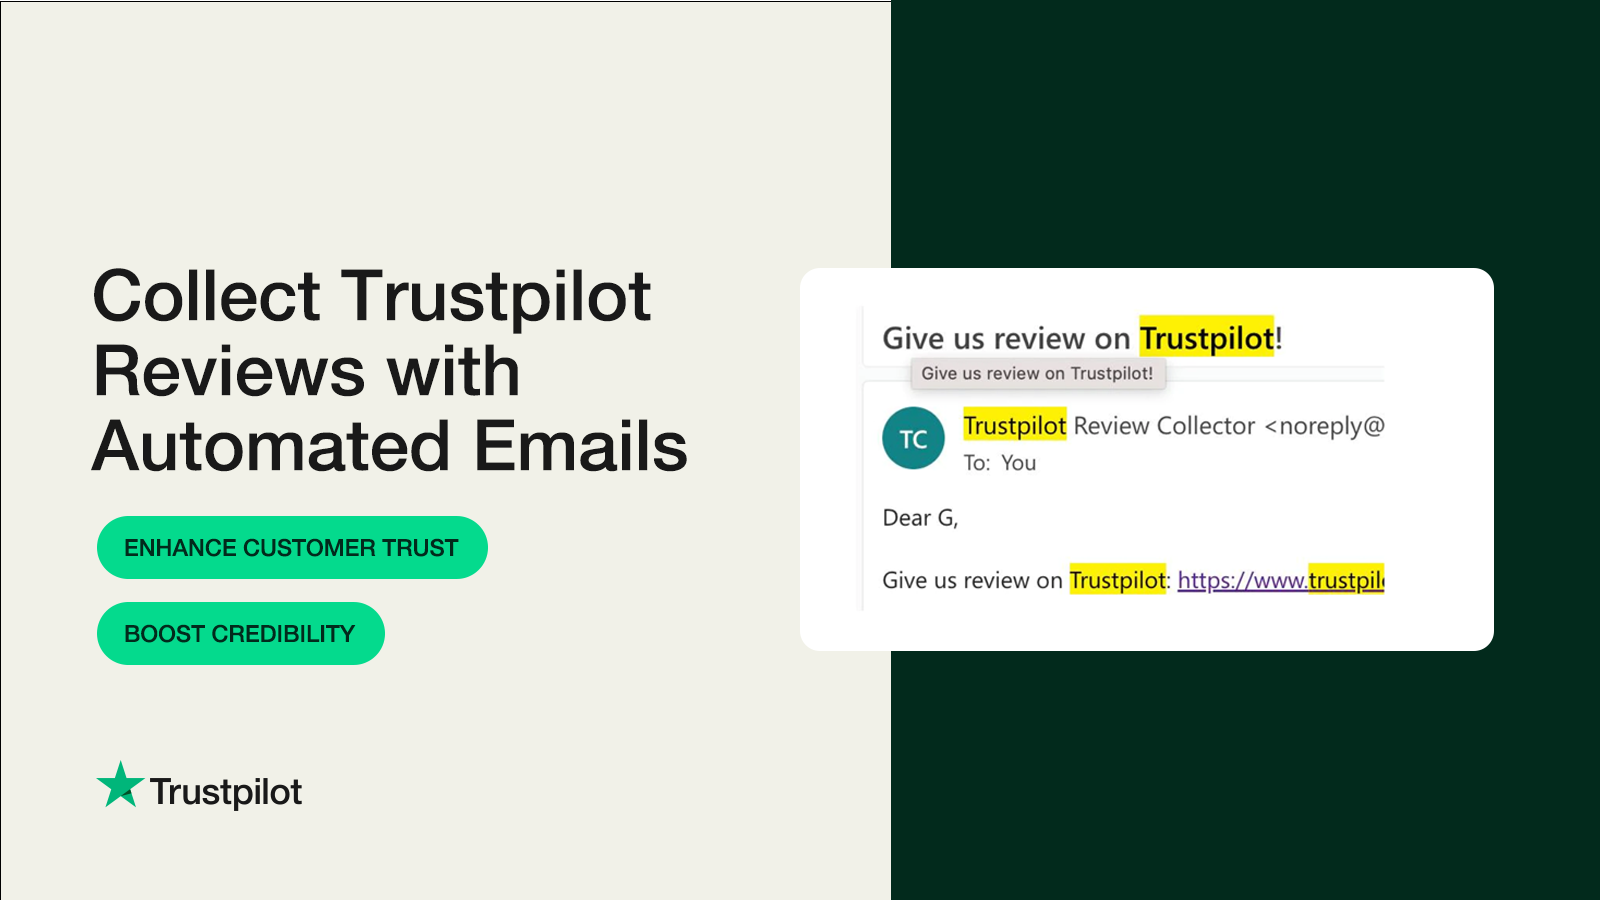 Recopila opiniones de Trustpilot con correos electrónicos automatizados